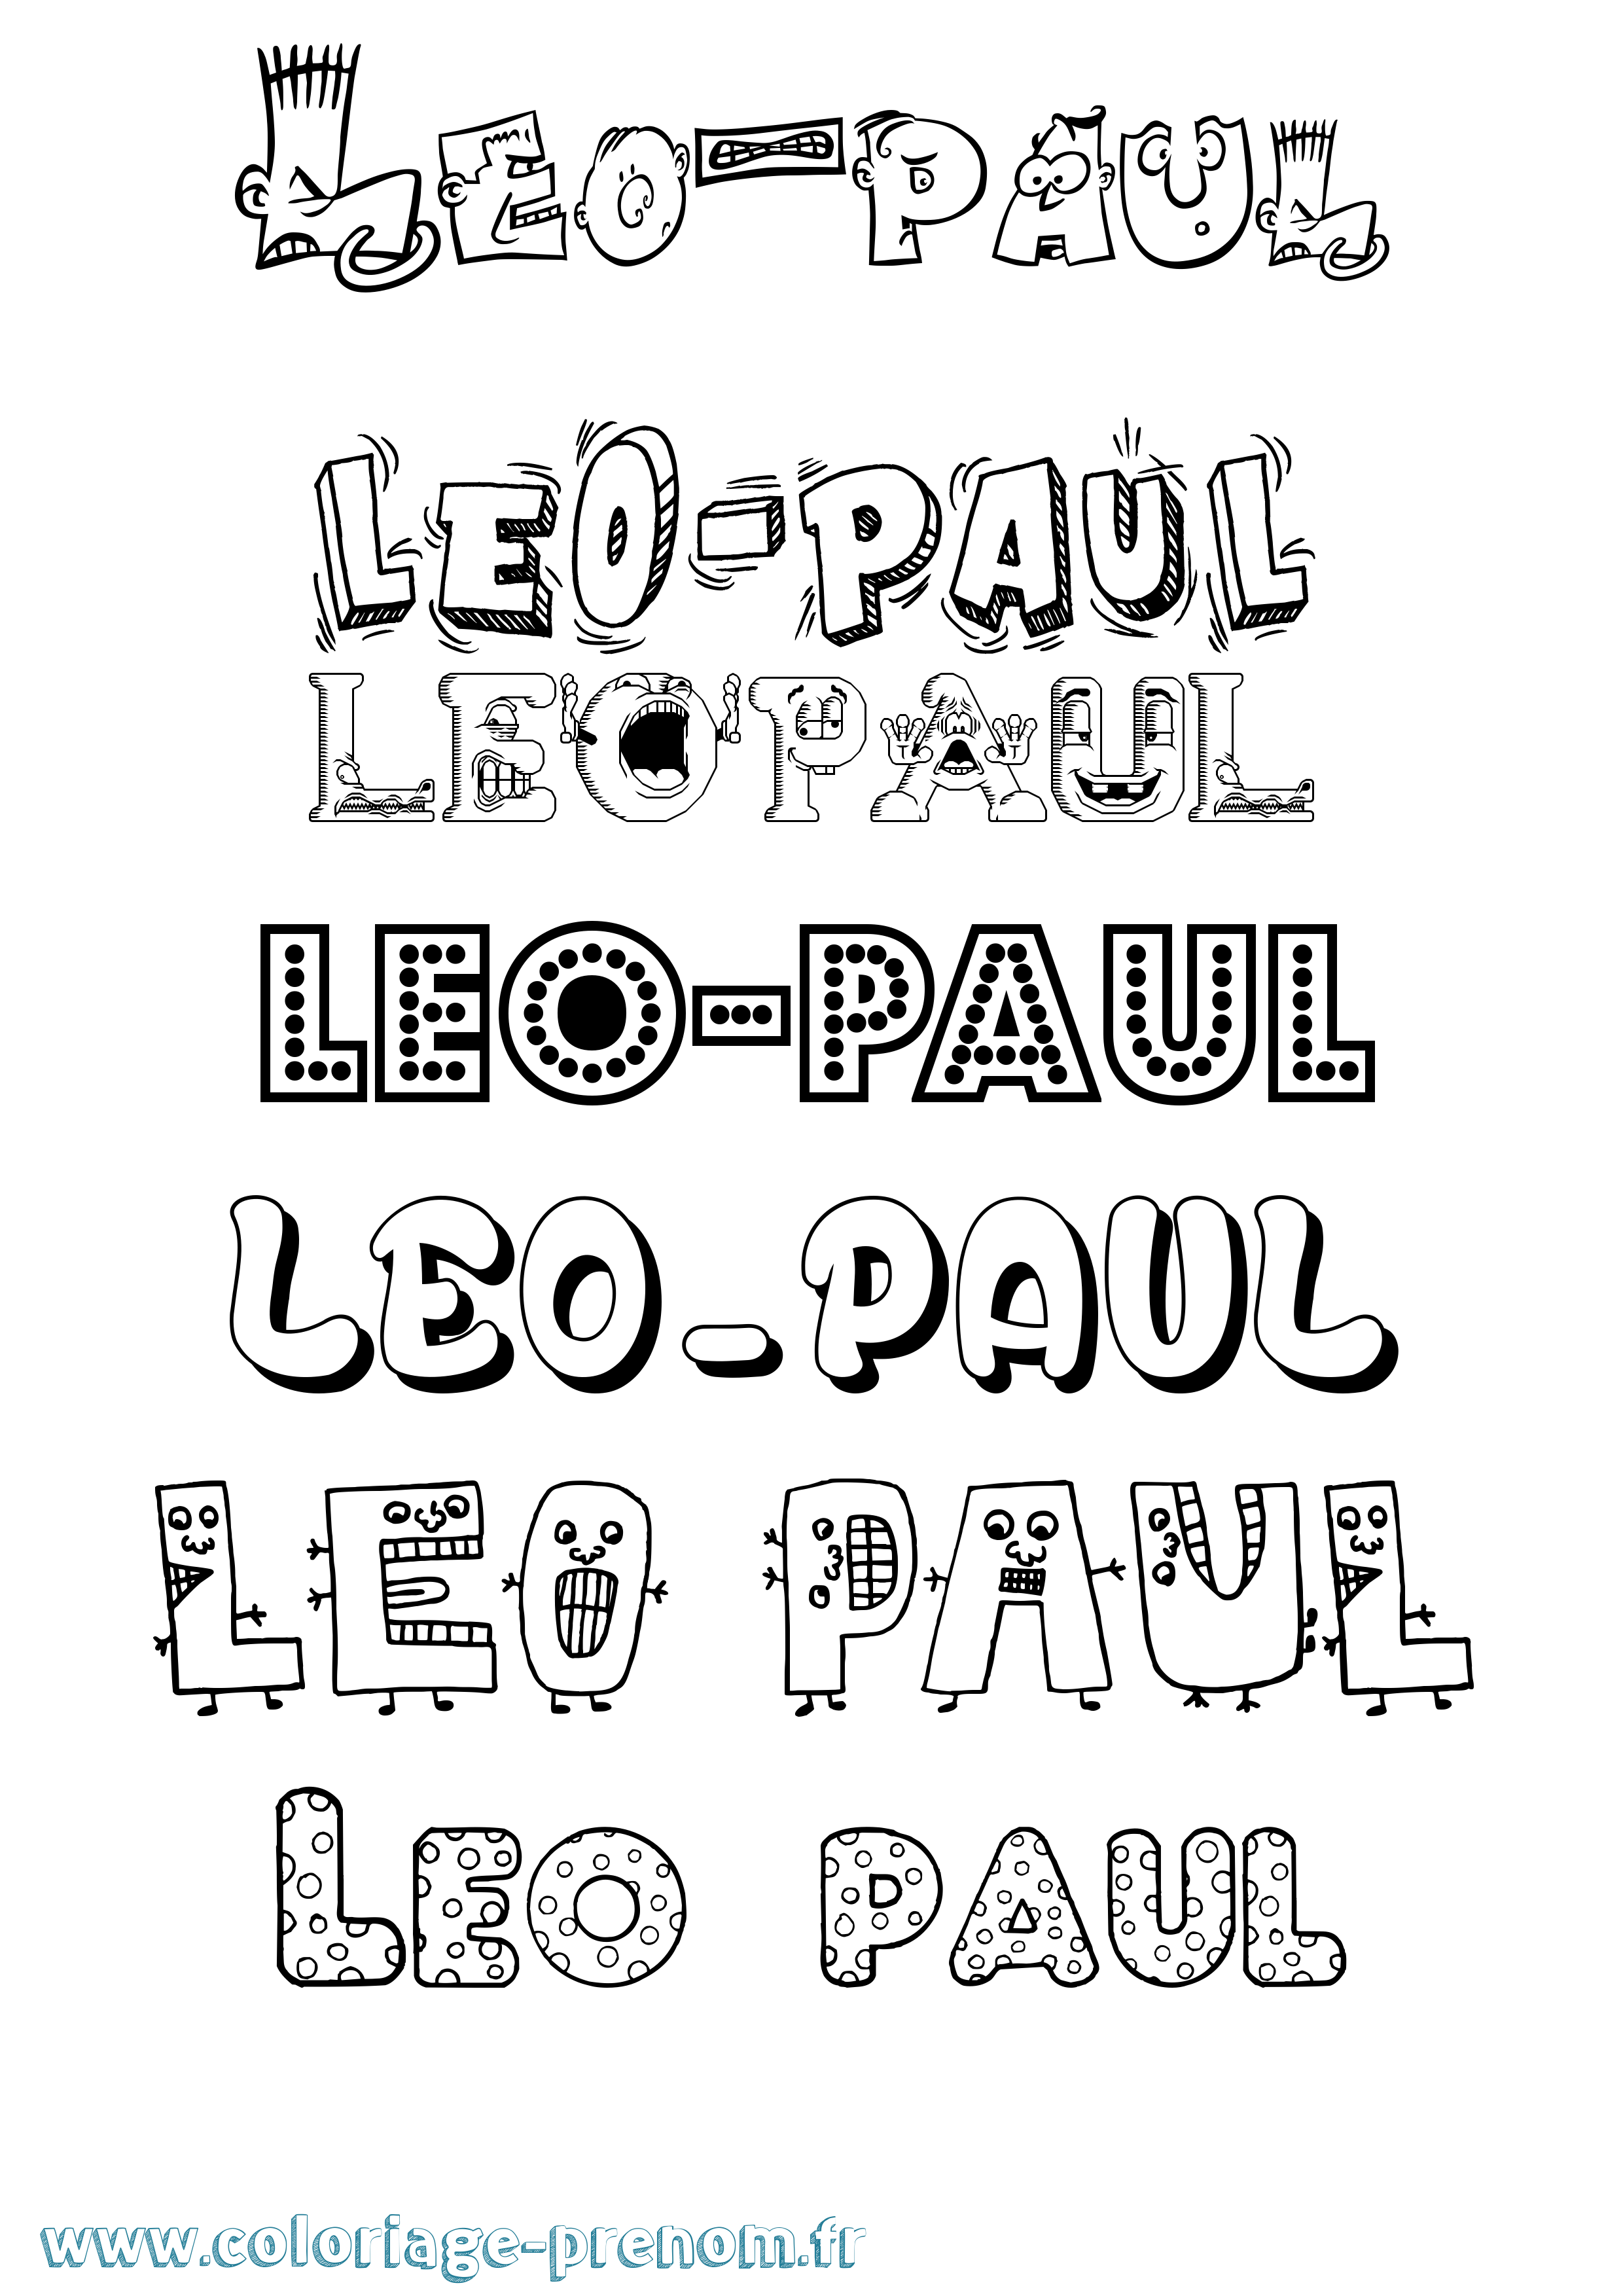 Coloriage prénom Leo-Paul Fun